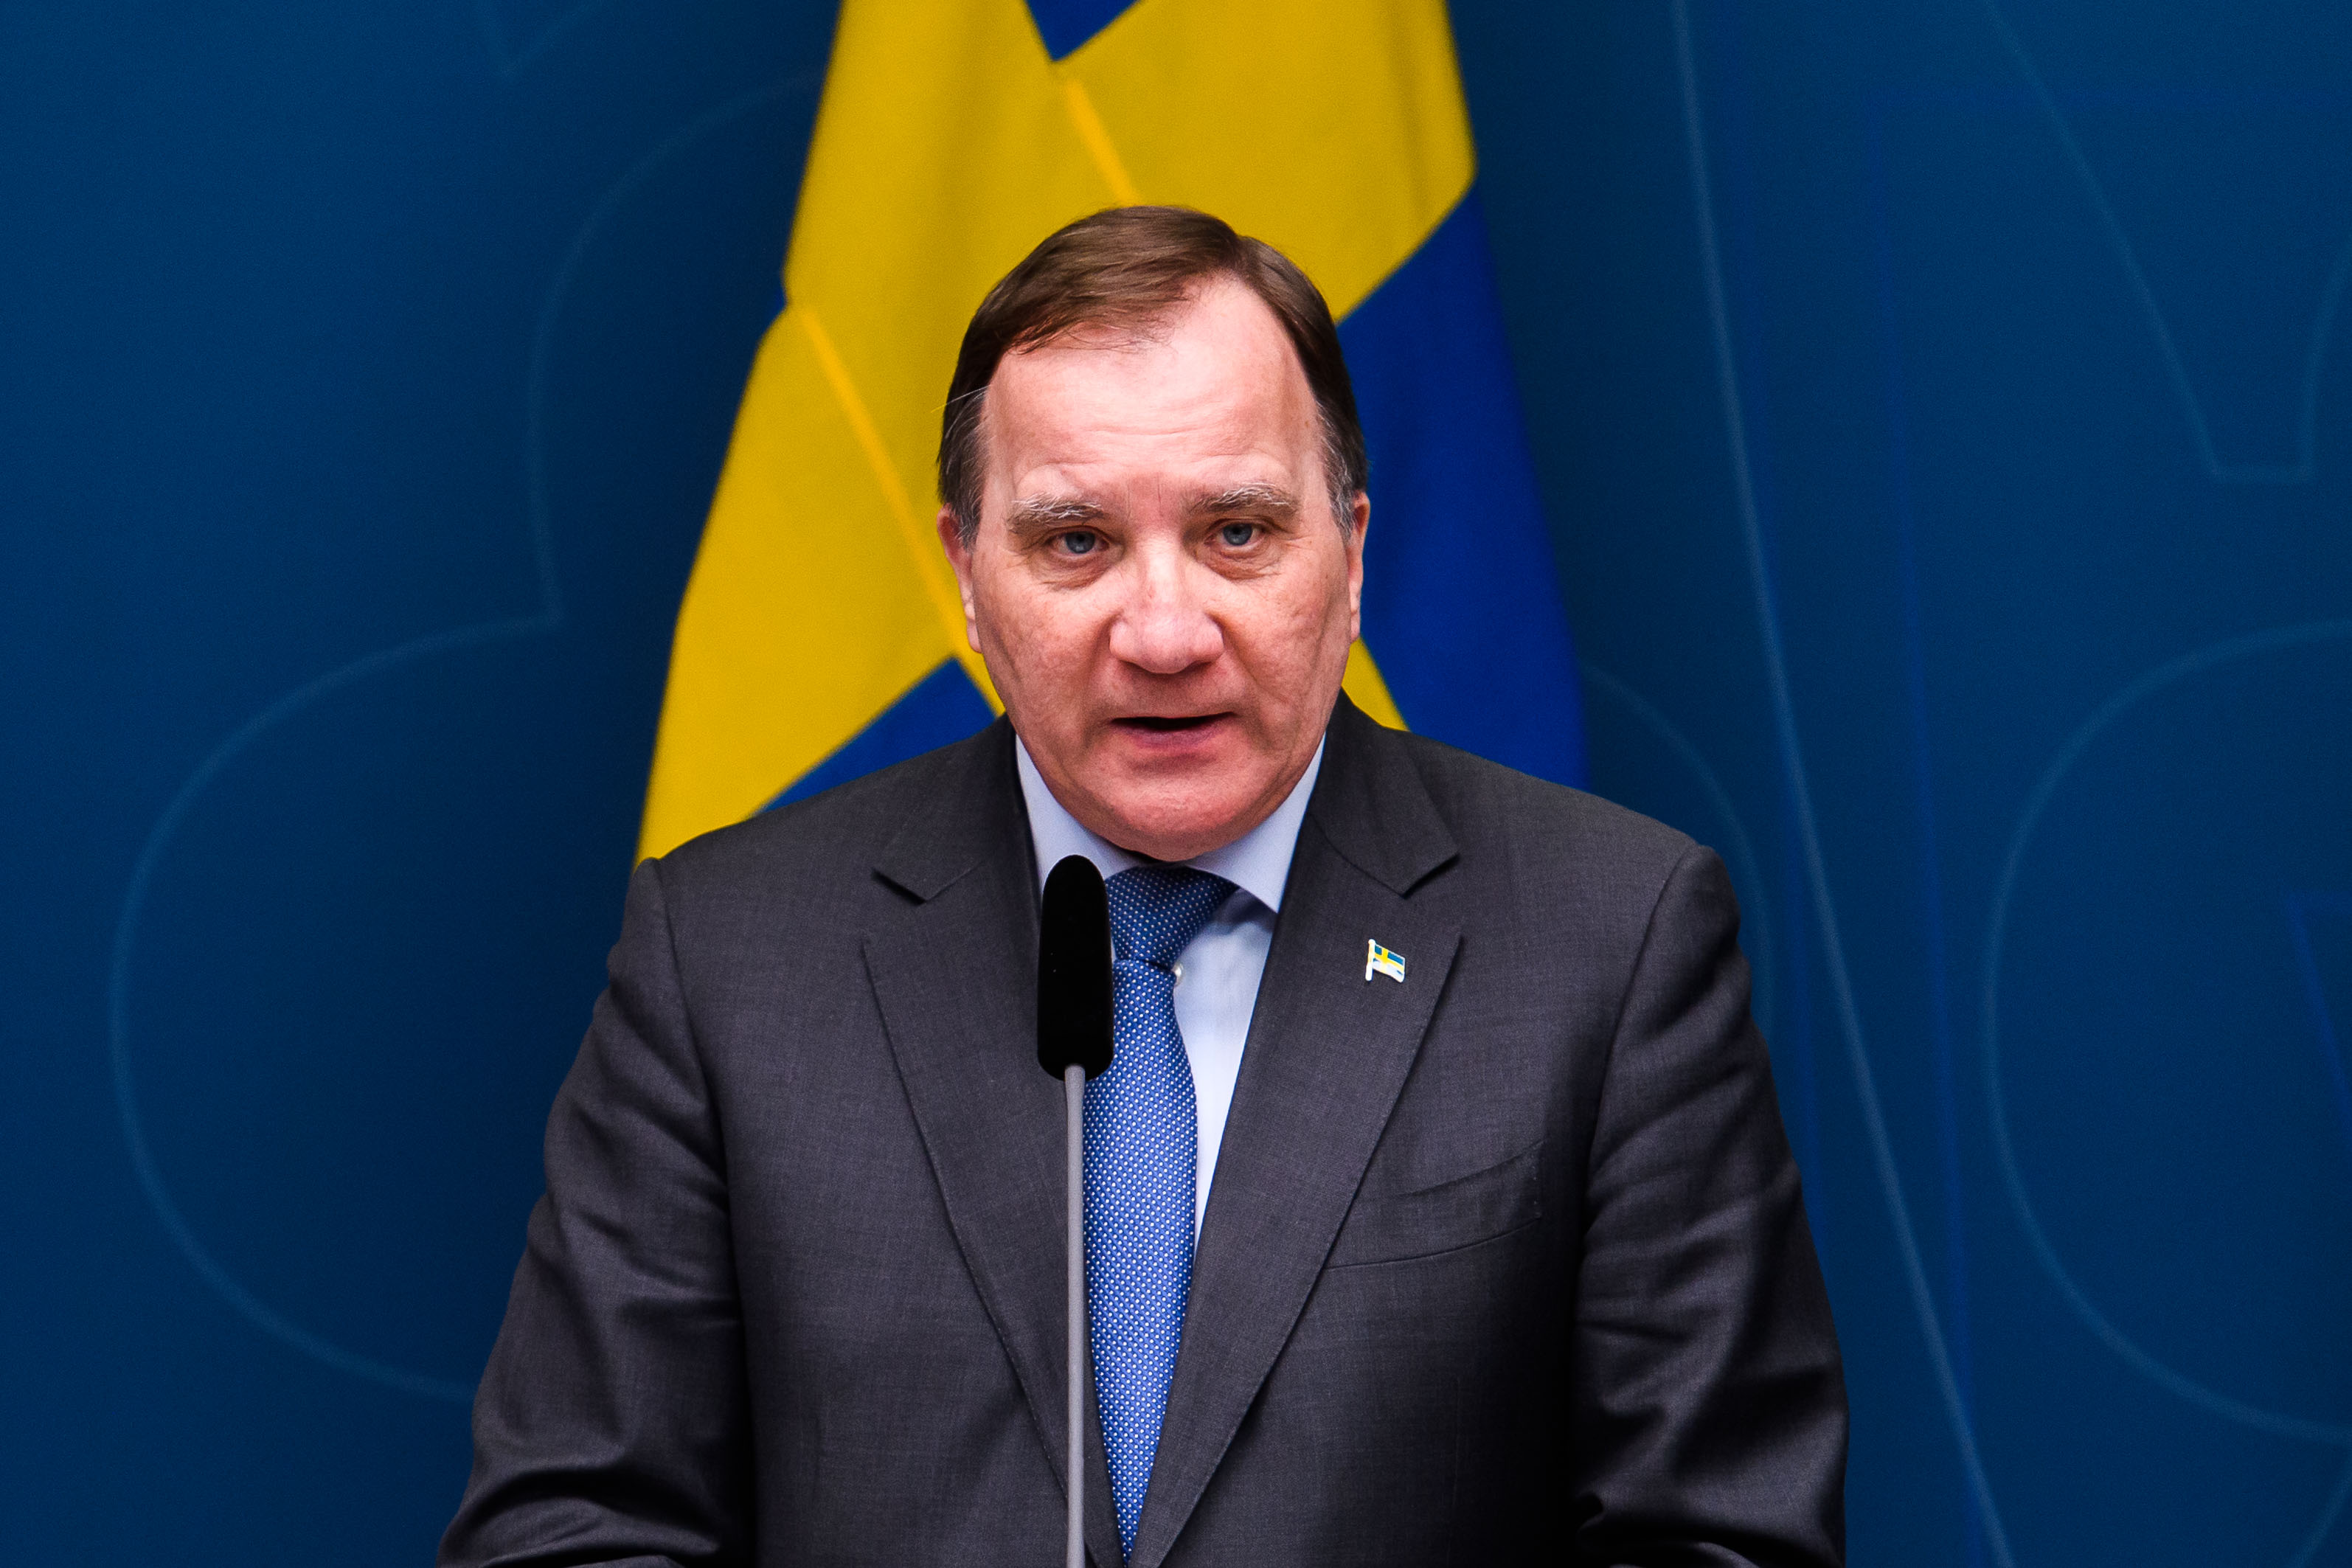 El primer ministro sueco, Stefan Lofven, un ex trabajador y secretario del sindicato metalúrgico, es el único miembro del gobierno sueco con auto a su disposición (ZUMA P / DPA)
